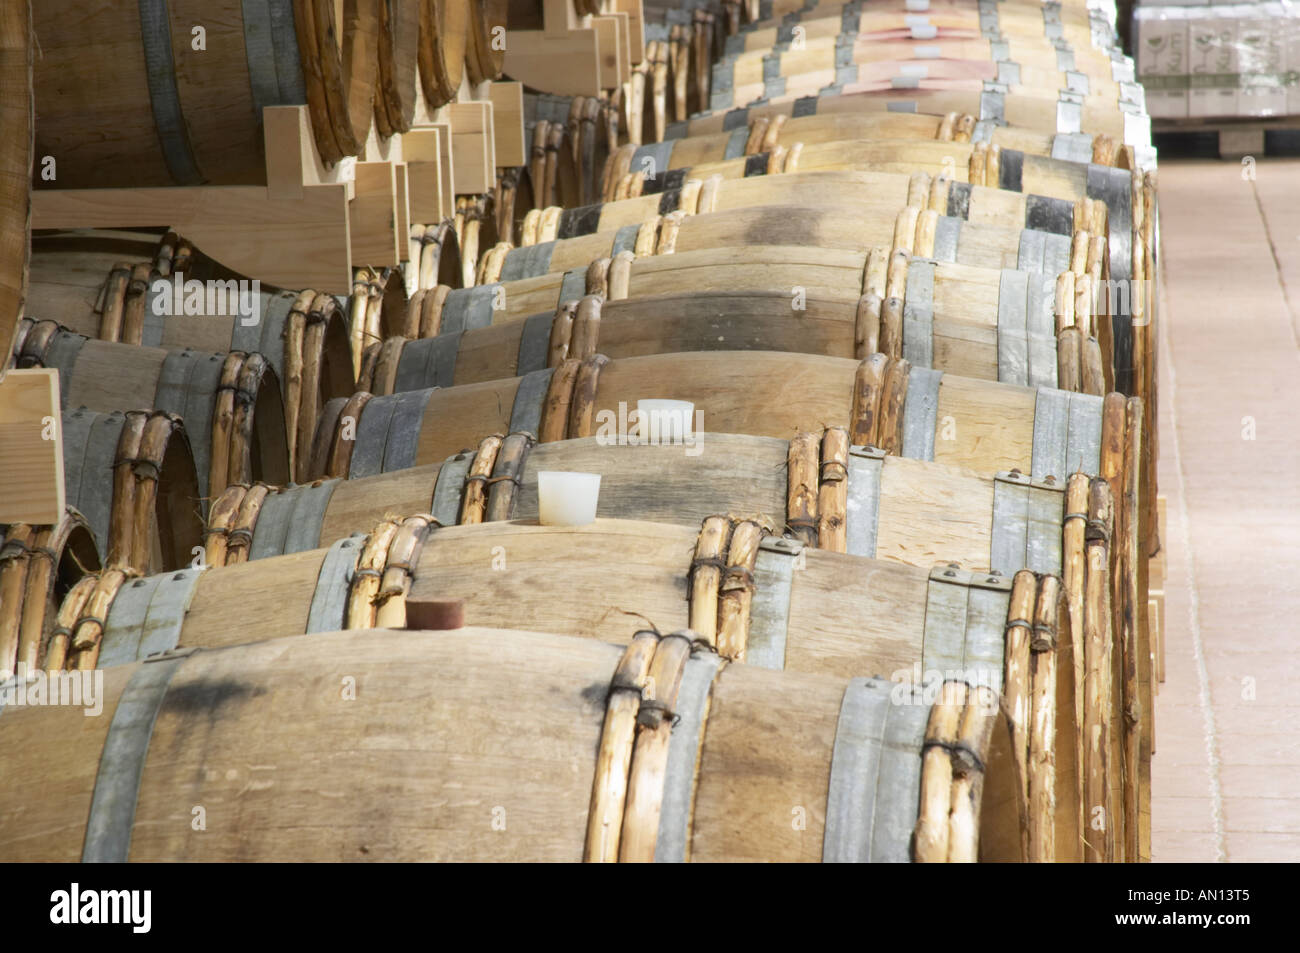 Des fûts de chêne pour le vieillissement du vin. L'herzégovine Produkt Winery, Citluk, près de Mostar. Russie Bosne i Hercegovine. Bosnie Herzégovine, l'Europe. Banque D'Images